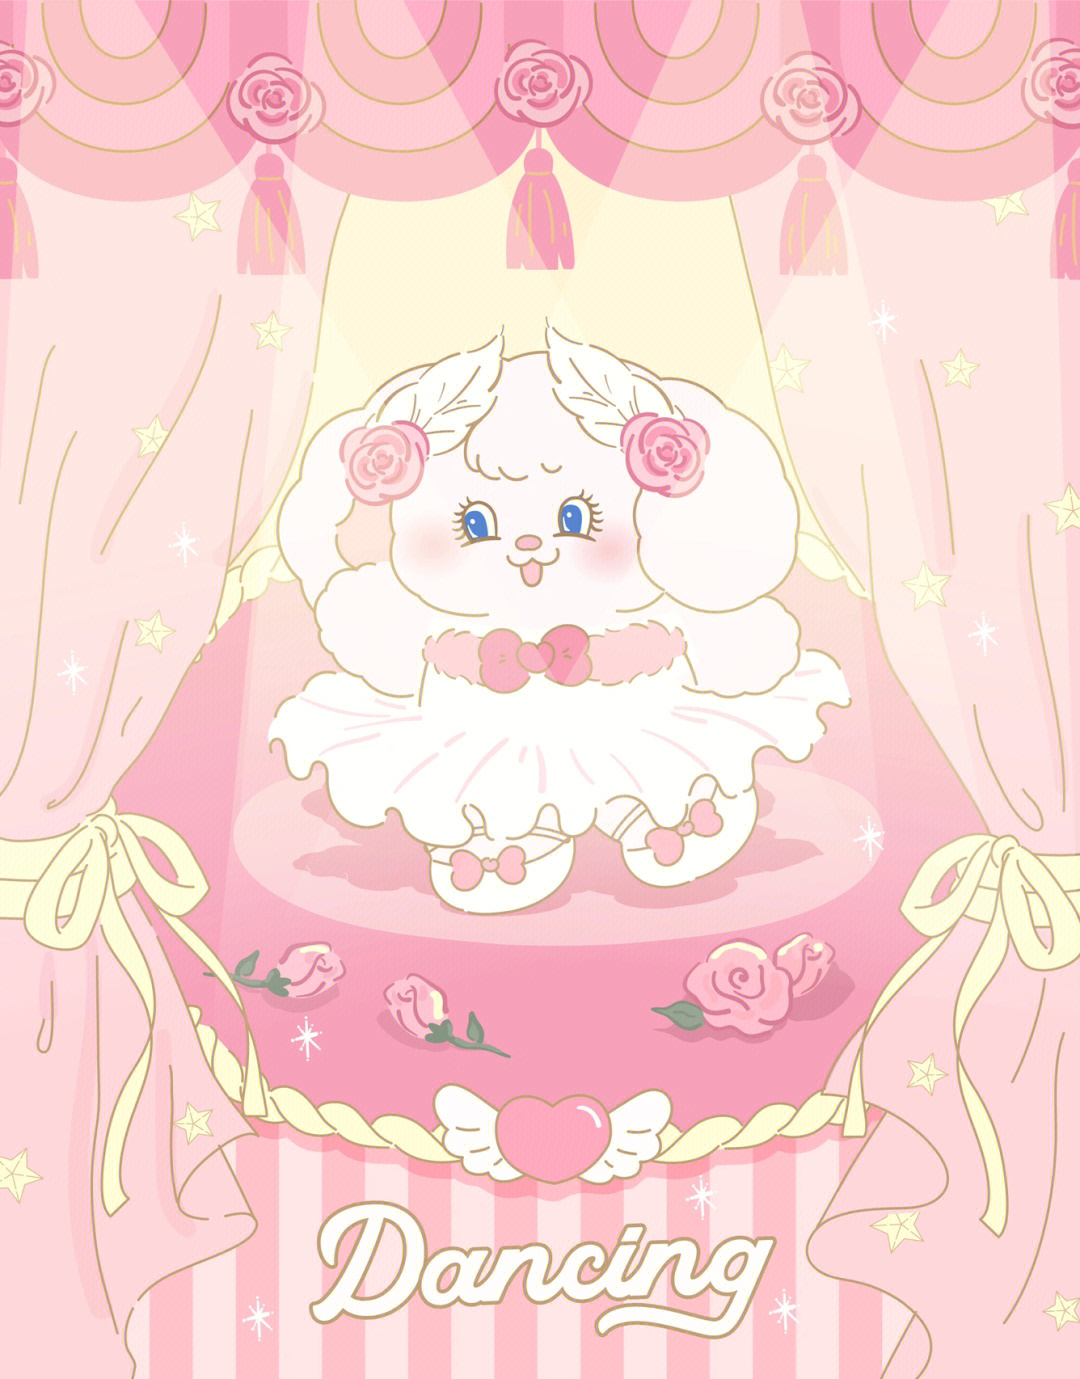 兔茸茸的粉色芭蕾02第二张壁纸爱啦0808